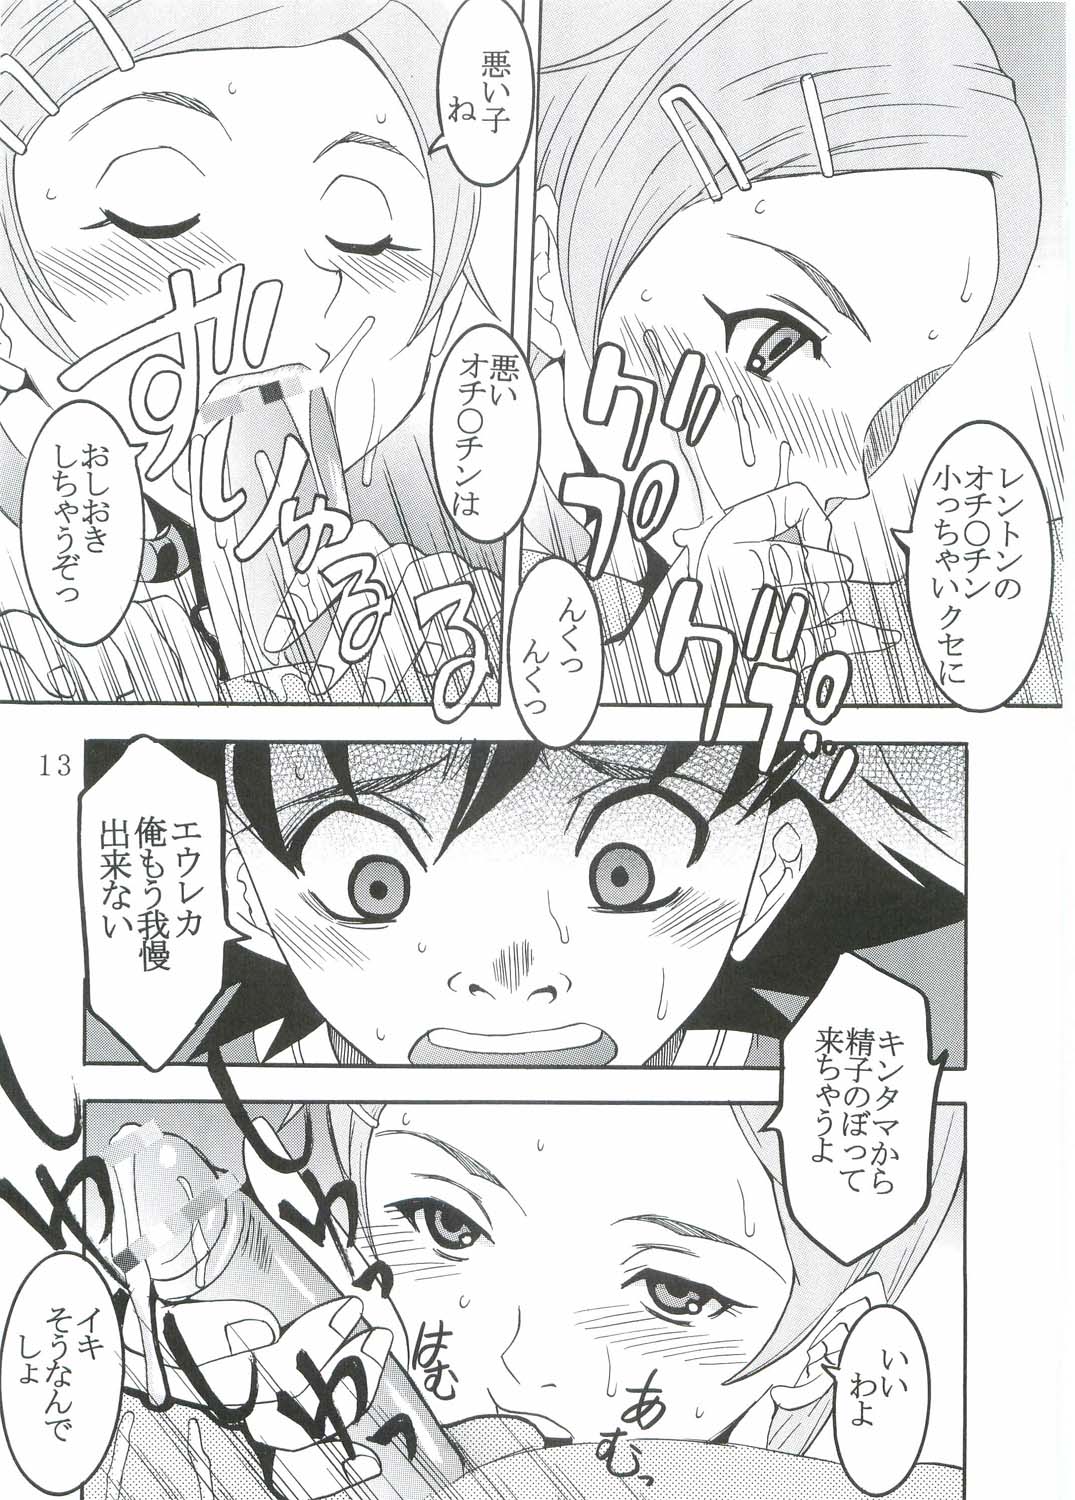 [St. Rio (Kitty, Kouenji Rei)] Ura ray-out (Eureka seveN) page 14 full